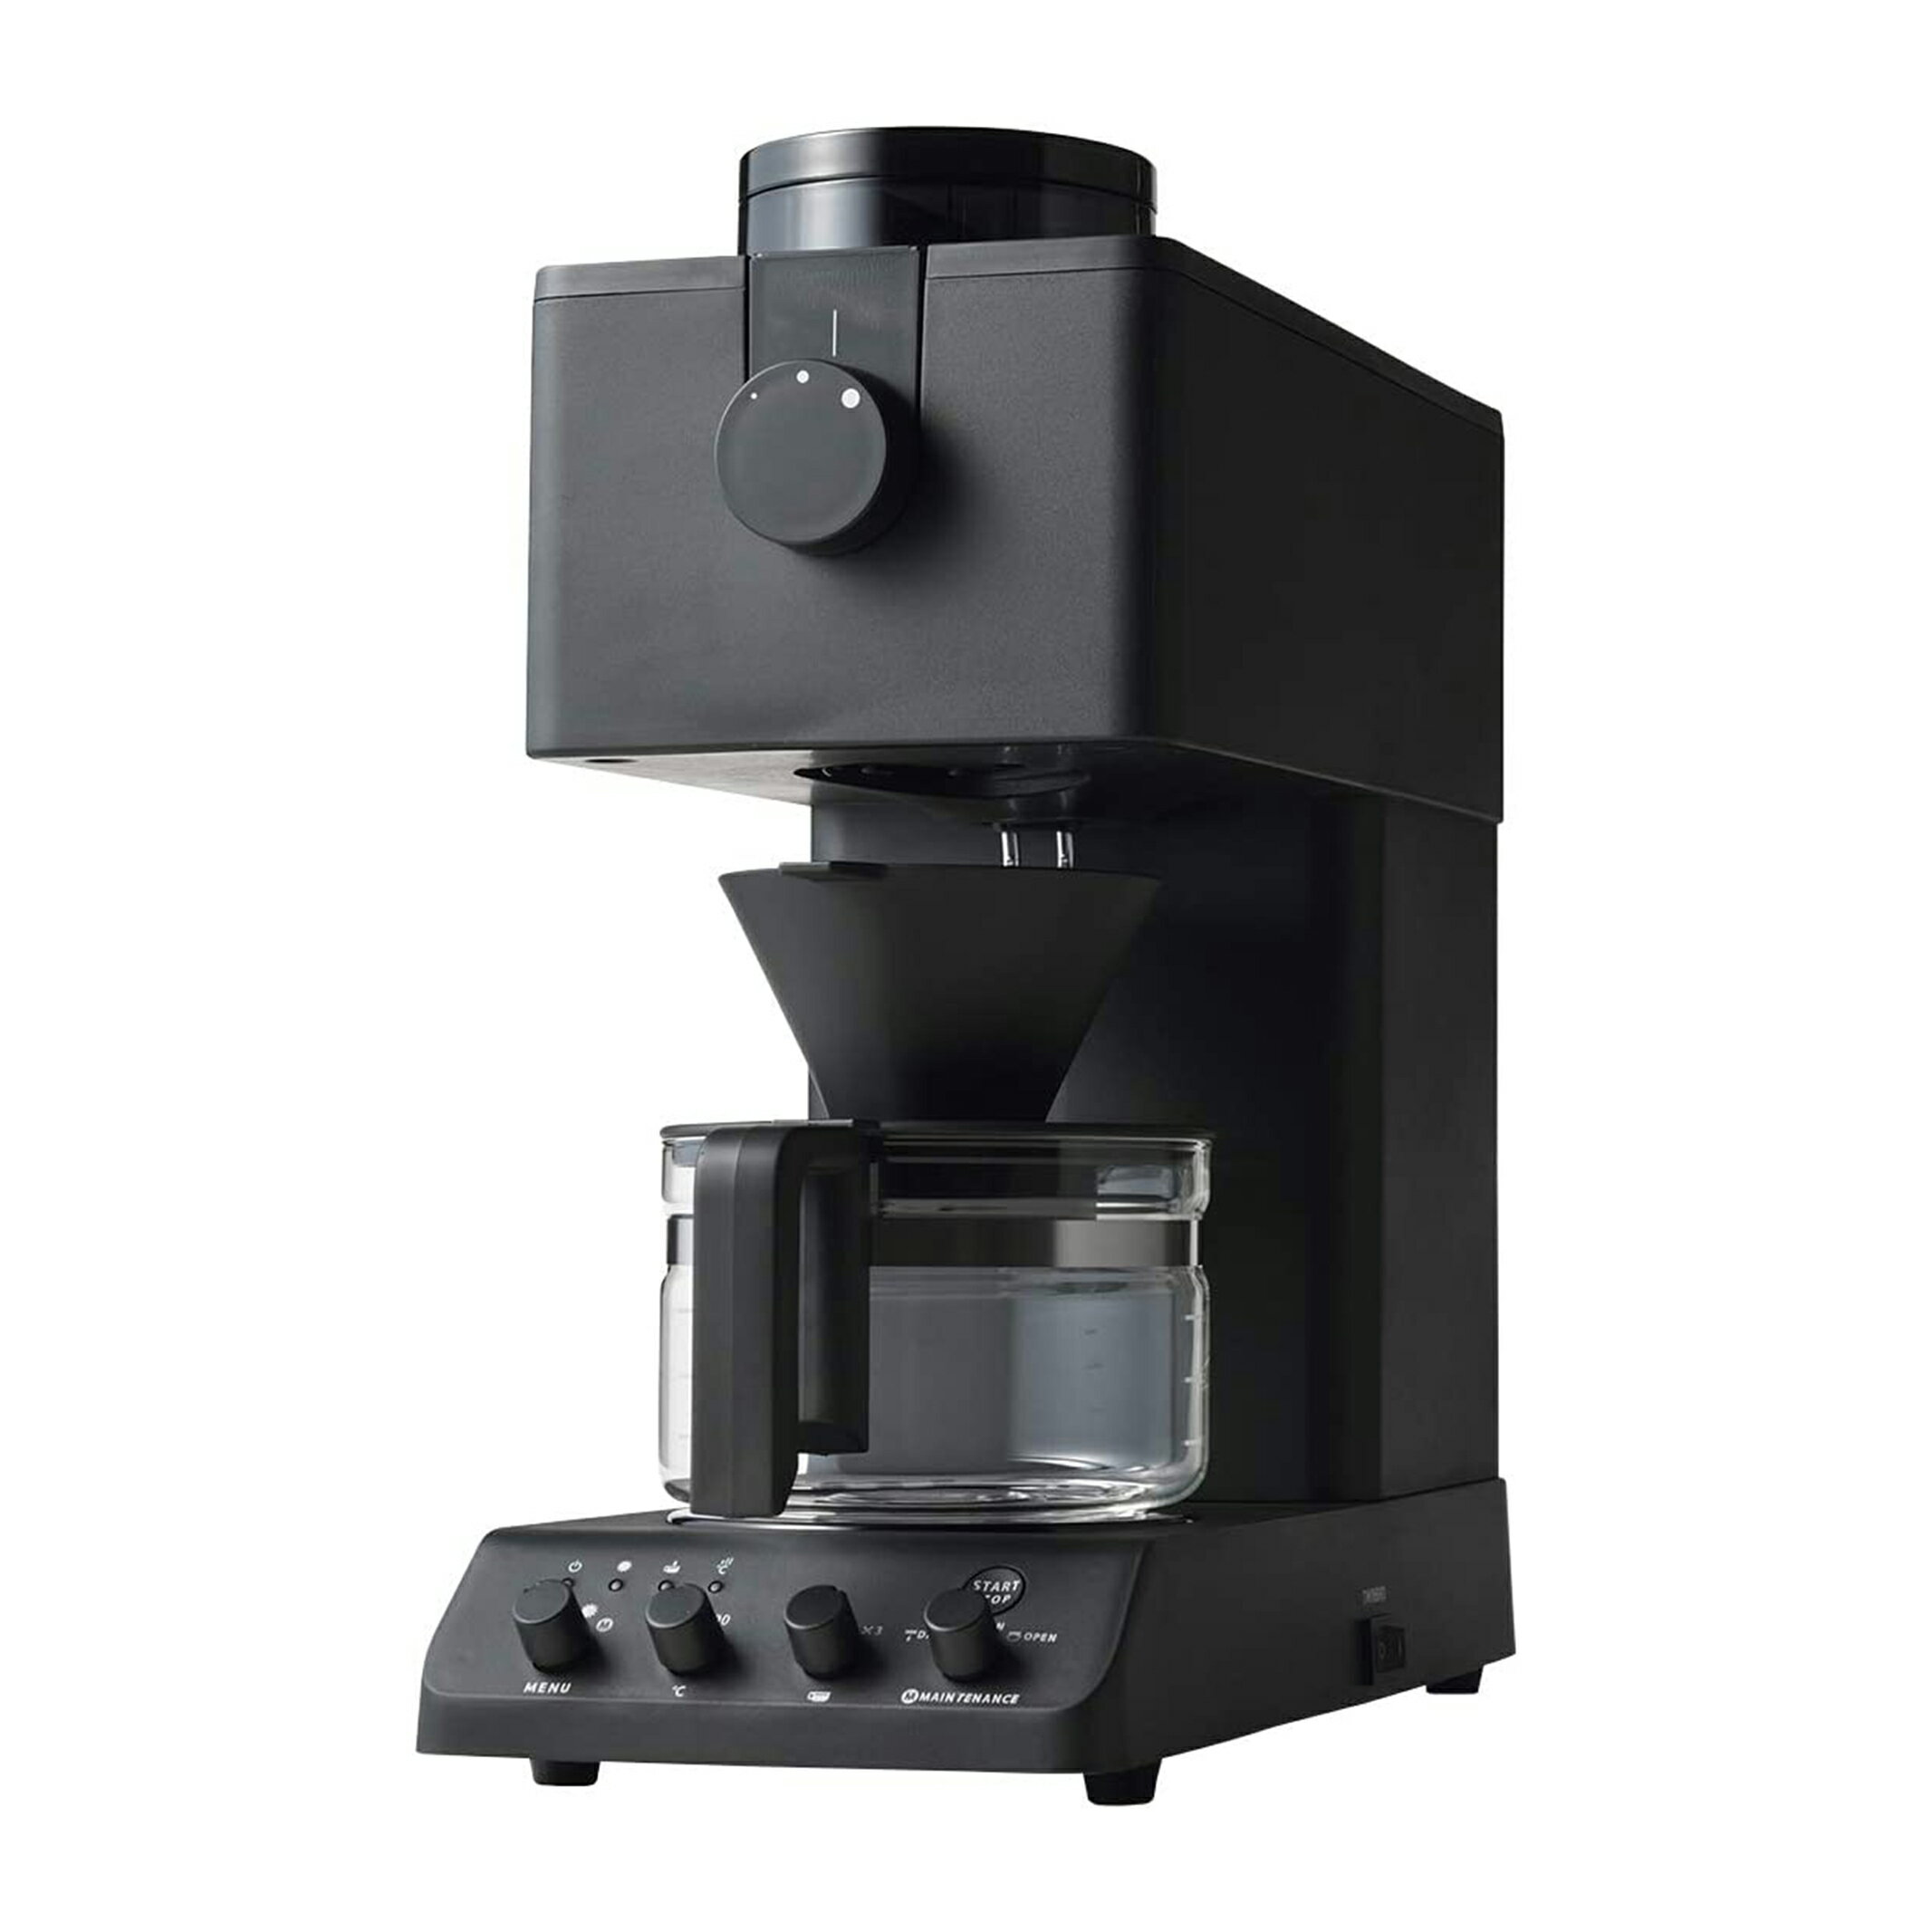 ツインバード コーヒーメーカー TWINBIRD ツインバード 全自動コーヒーメーカー CM-D457 ブラック